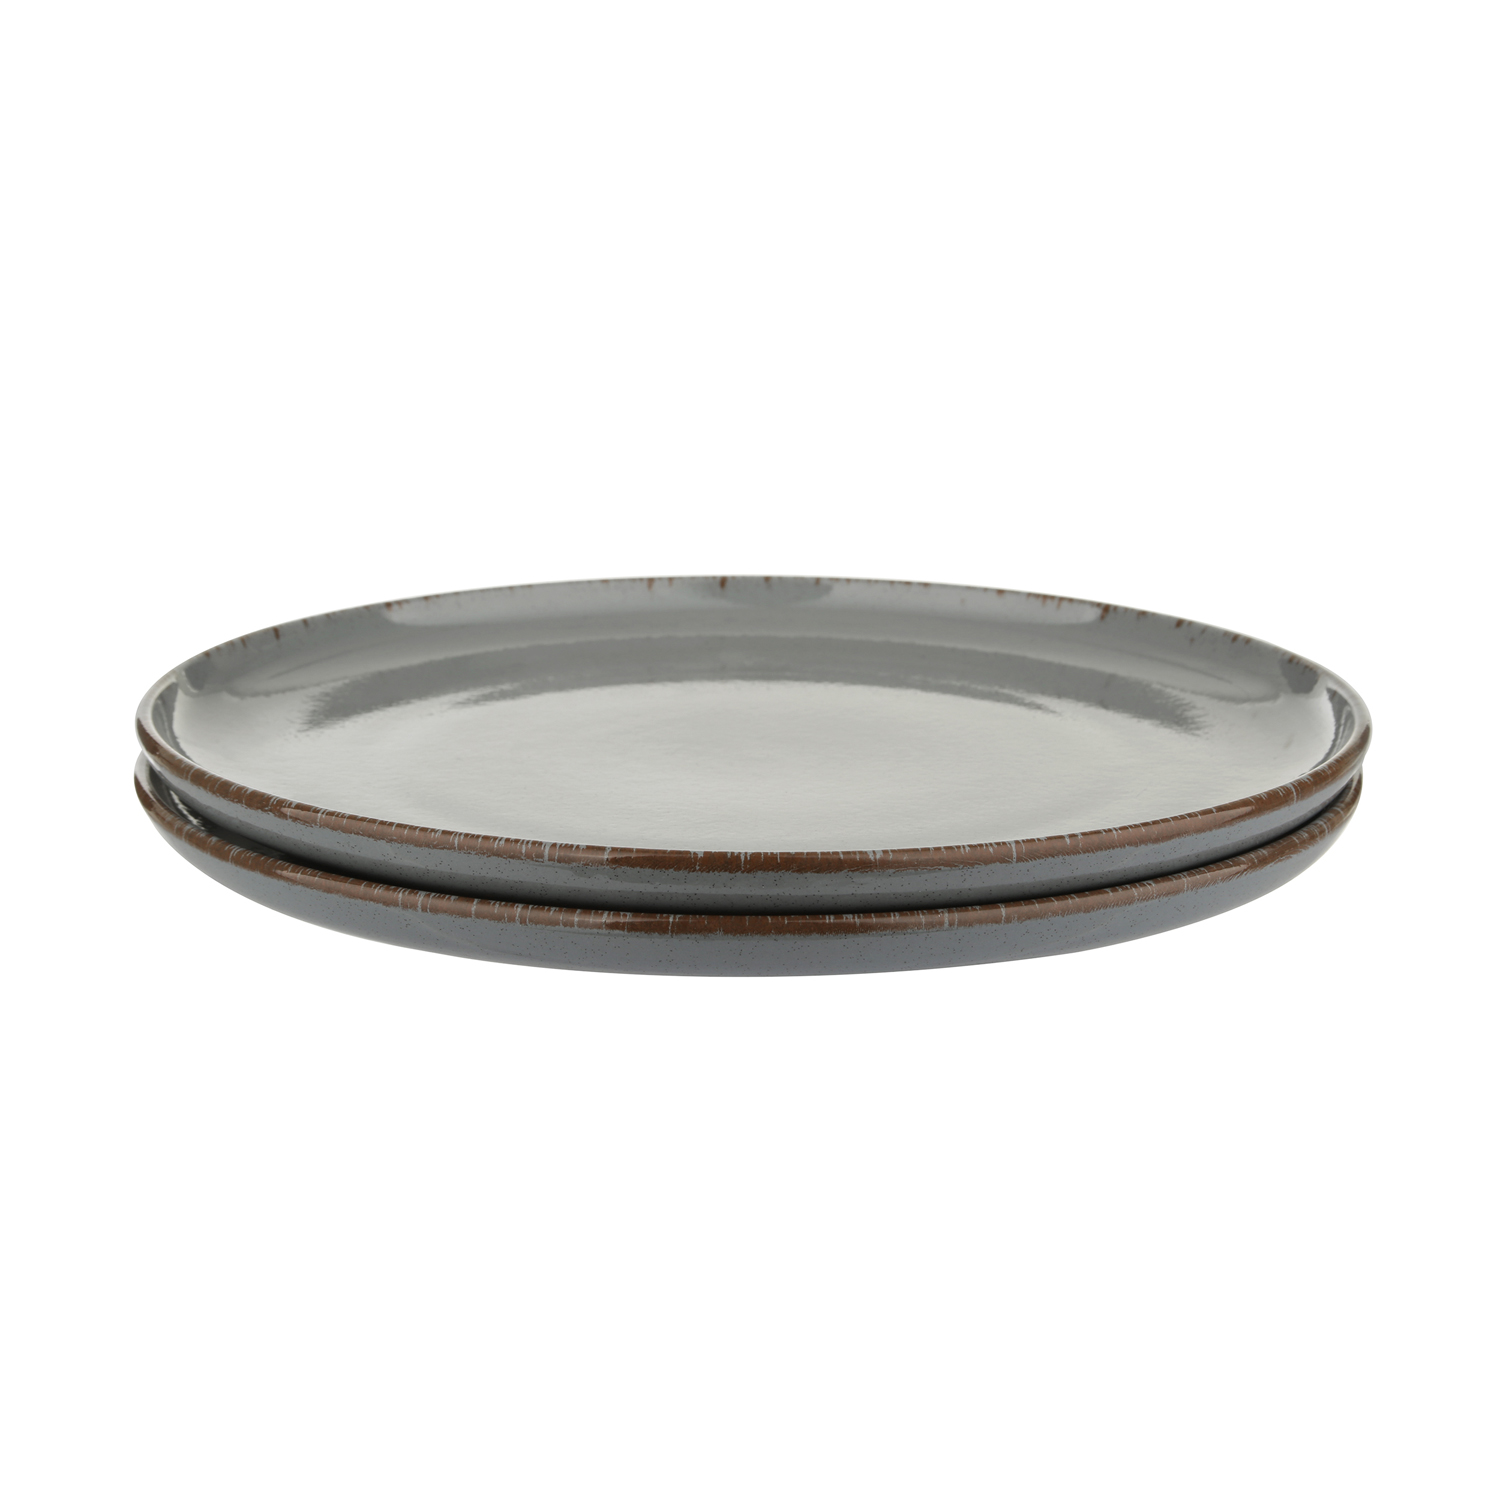 Casalinghi altri brand Servizio 2 piatti piani in ceramica grigia 27 cm |  Set Piatti - Fluffyunderware